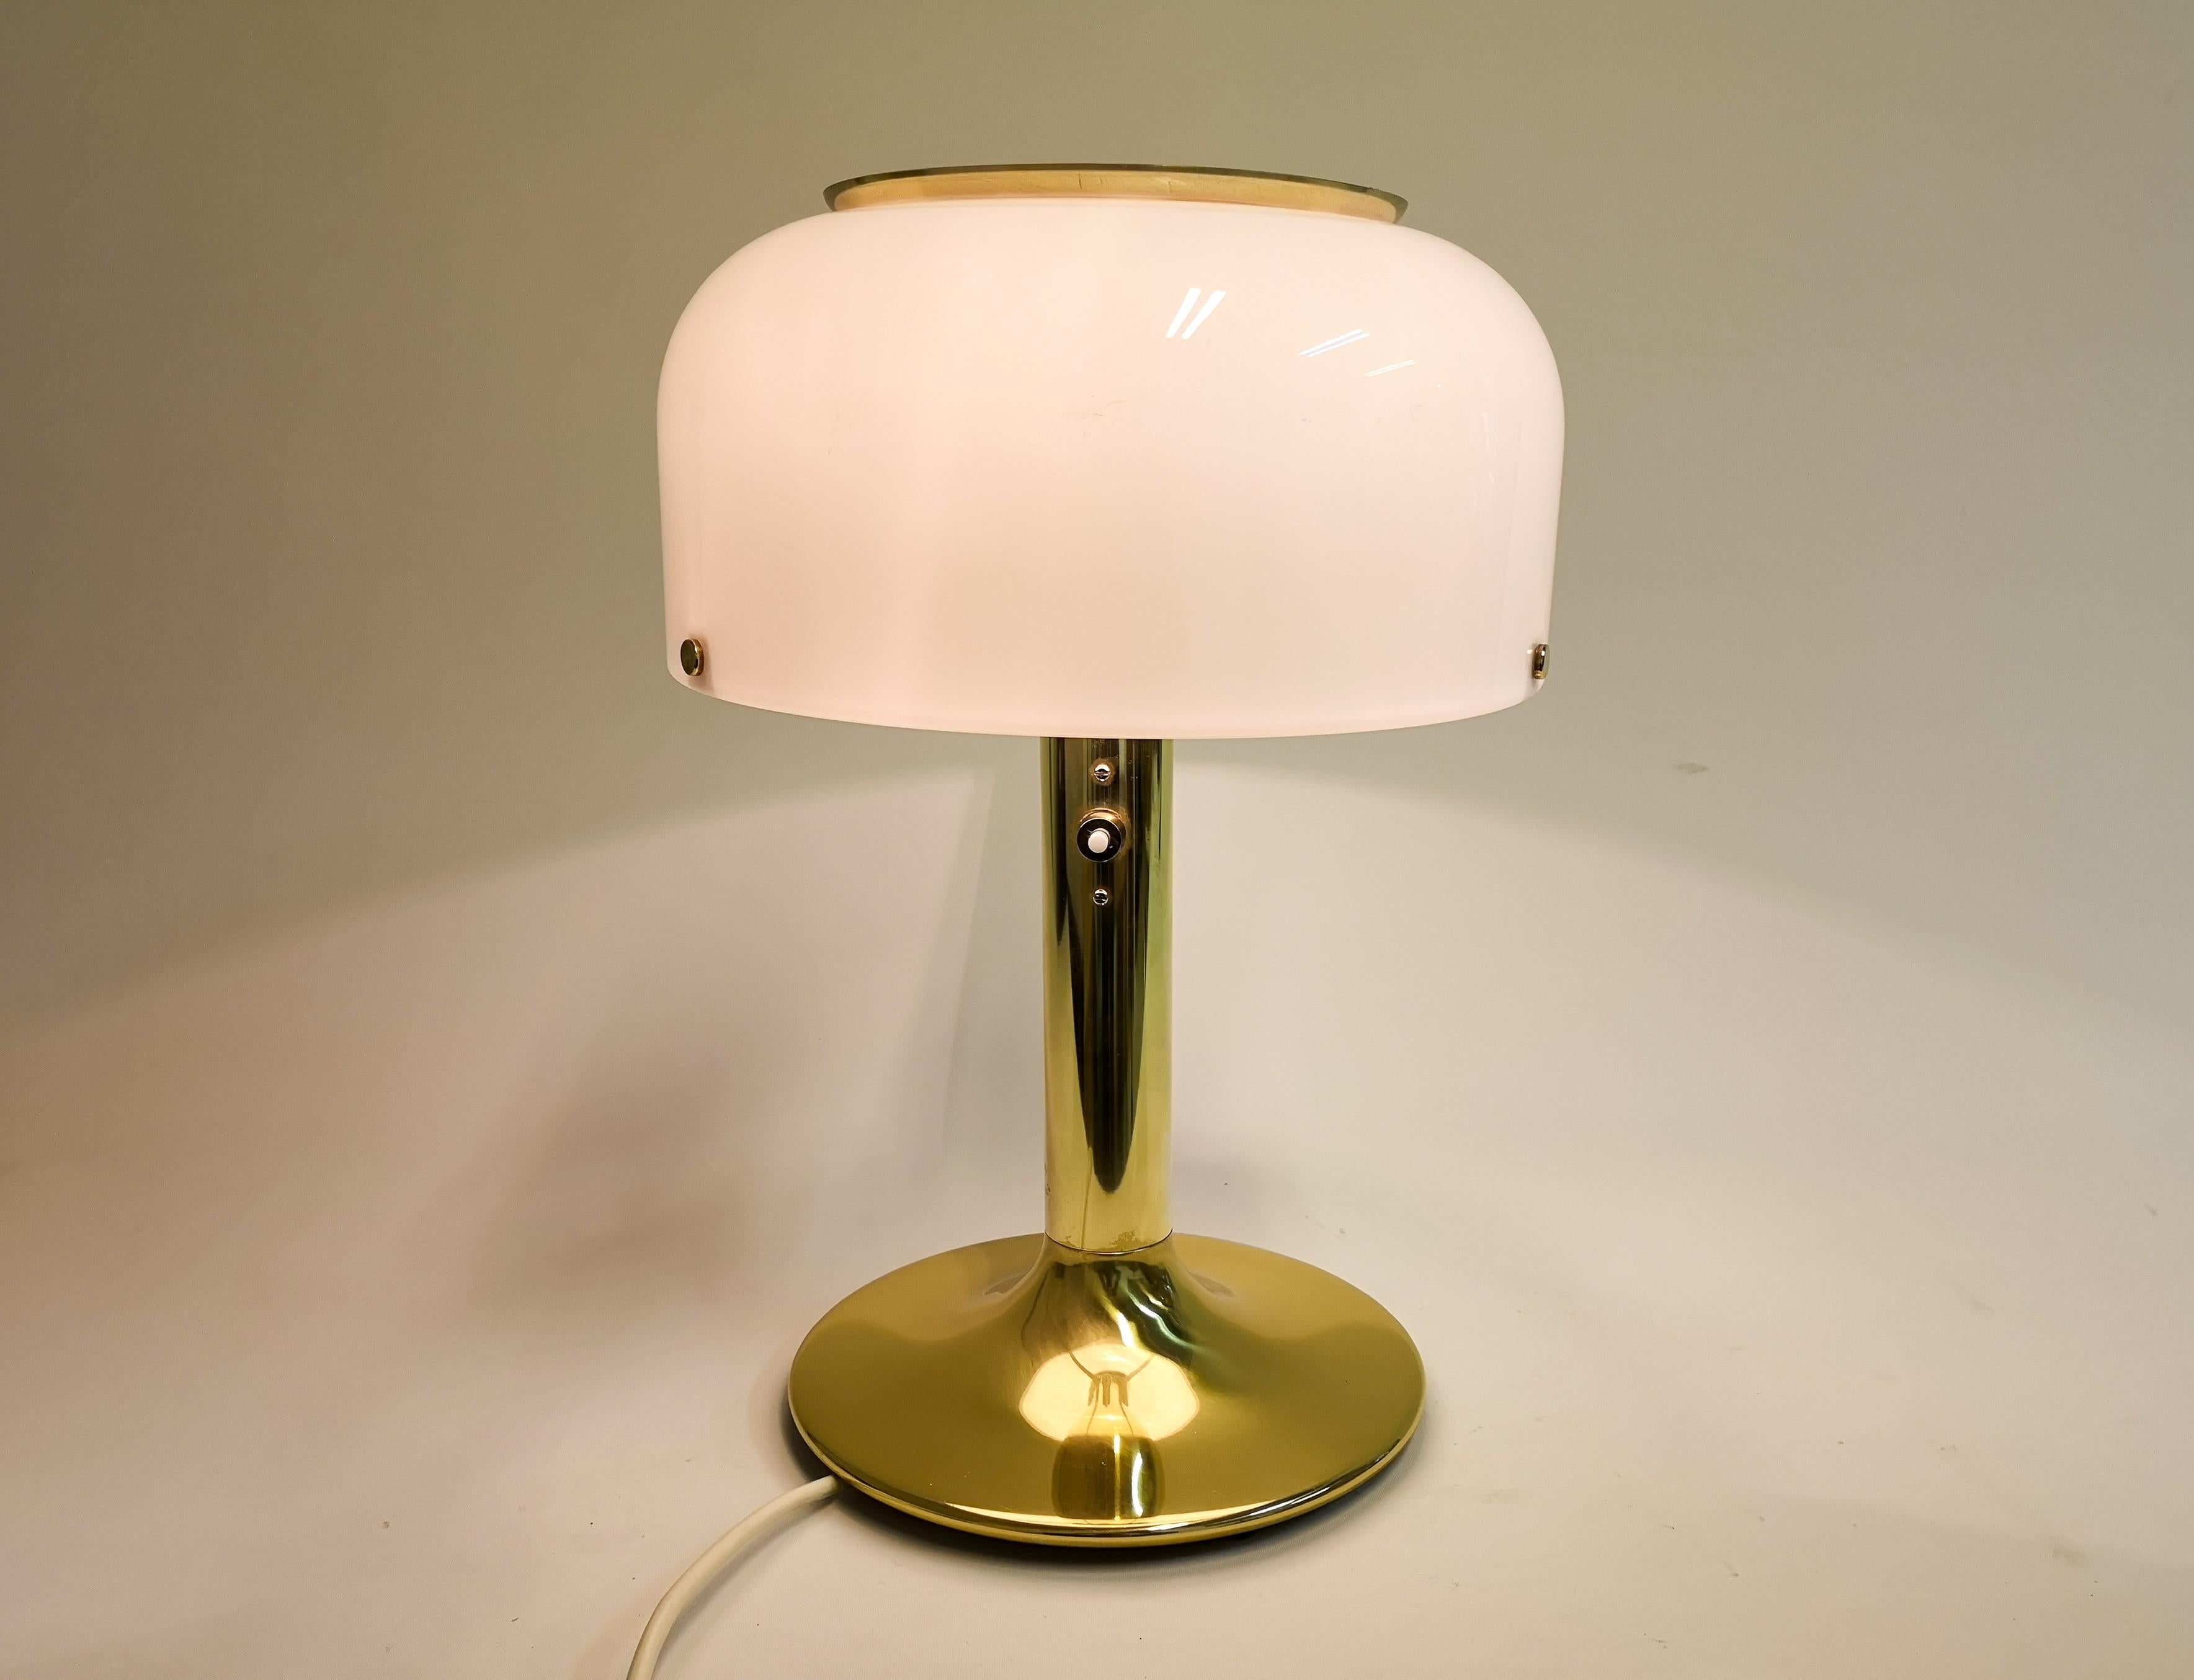 Cette lampe de table des années 1960, modèle Knubbling, a été conçue par Anders Pehrson pour Ateljé Lyktan à Åhus, en Suède. 

Bel état de fonctionnement vintage, petites fissures dans l'acrylique où le laiton est attaché. 

Mesures : H 47 cm, D